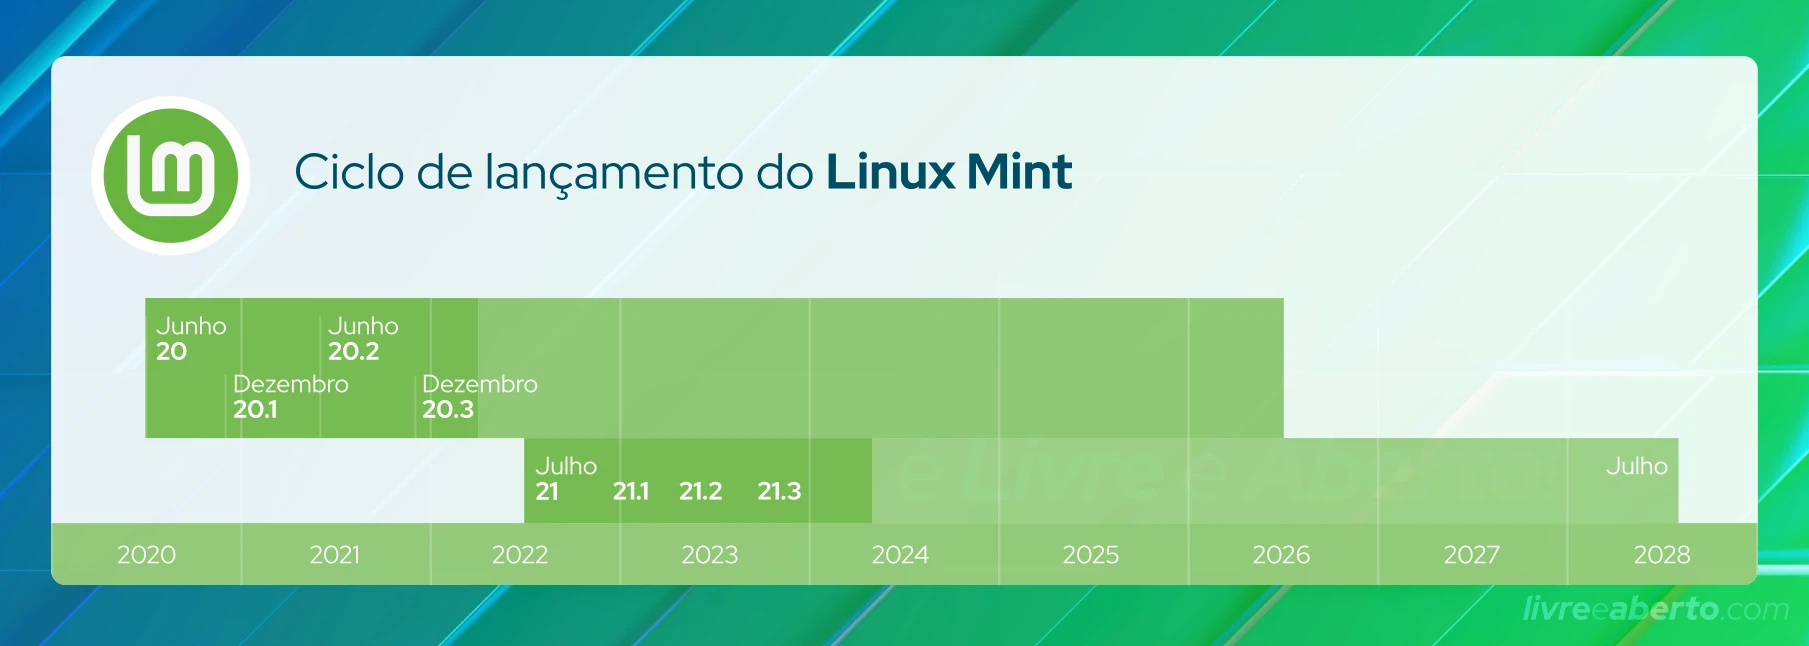 Ciclo de lançamento do Linux Mint